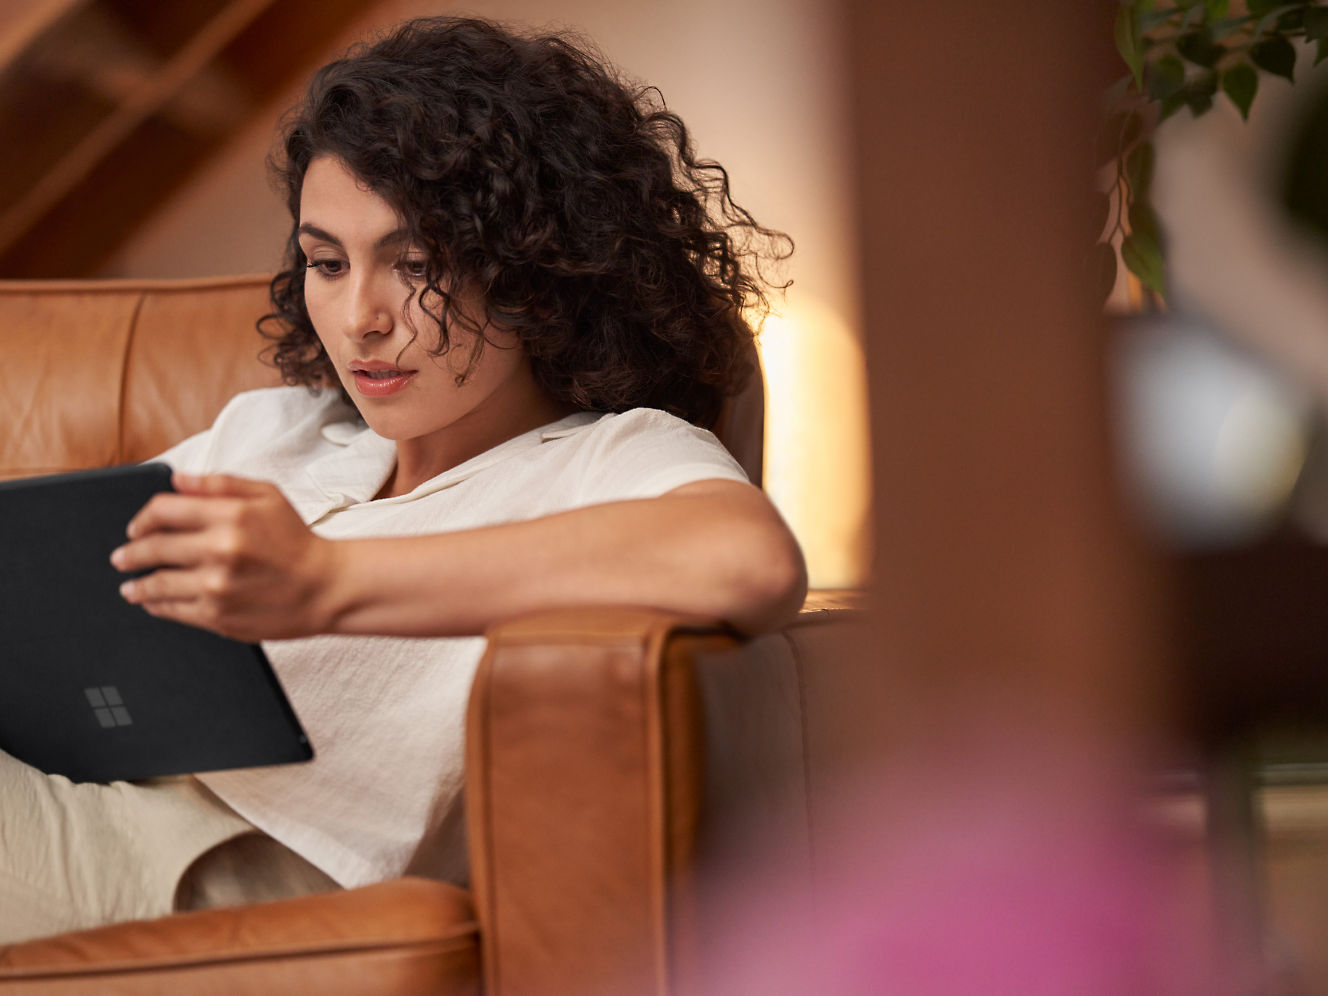 Žena s kudrnatými vlasy, která pozorně čte na tabletu a sedí v hnědém koženém křesle.